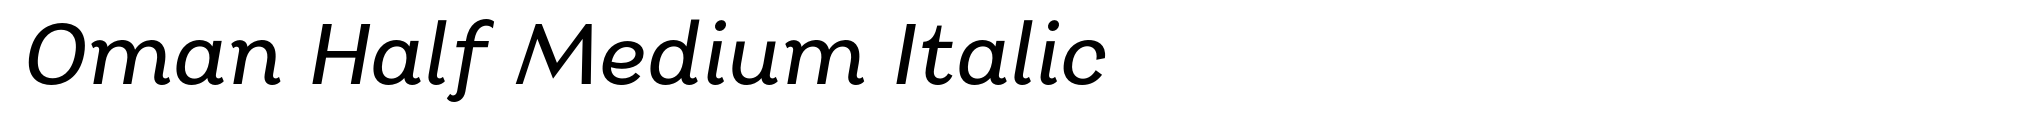 Oman Half Medium Italic image